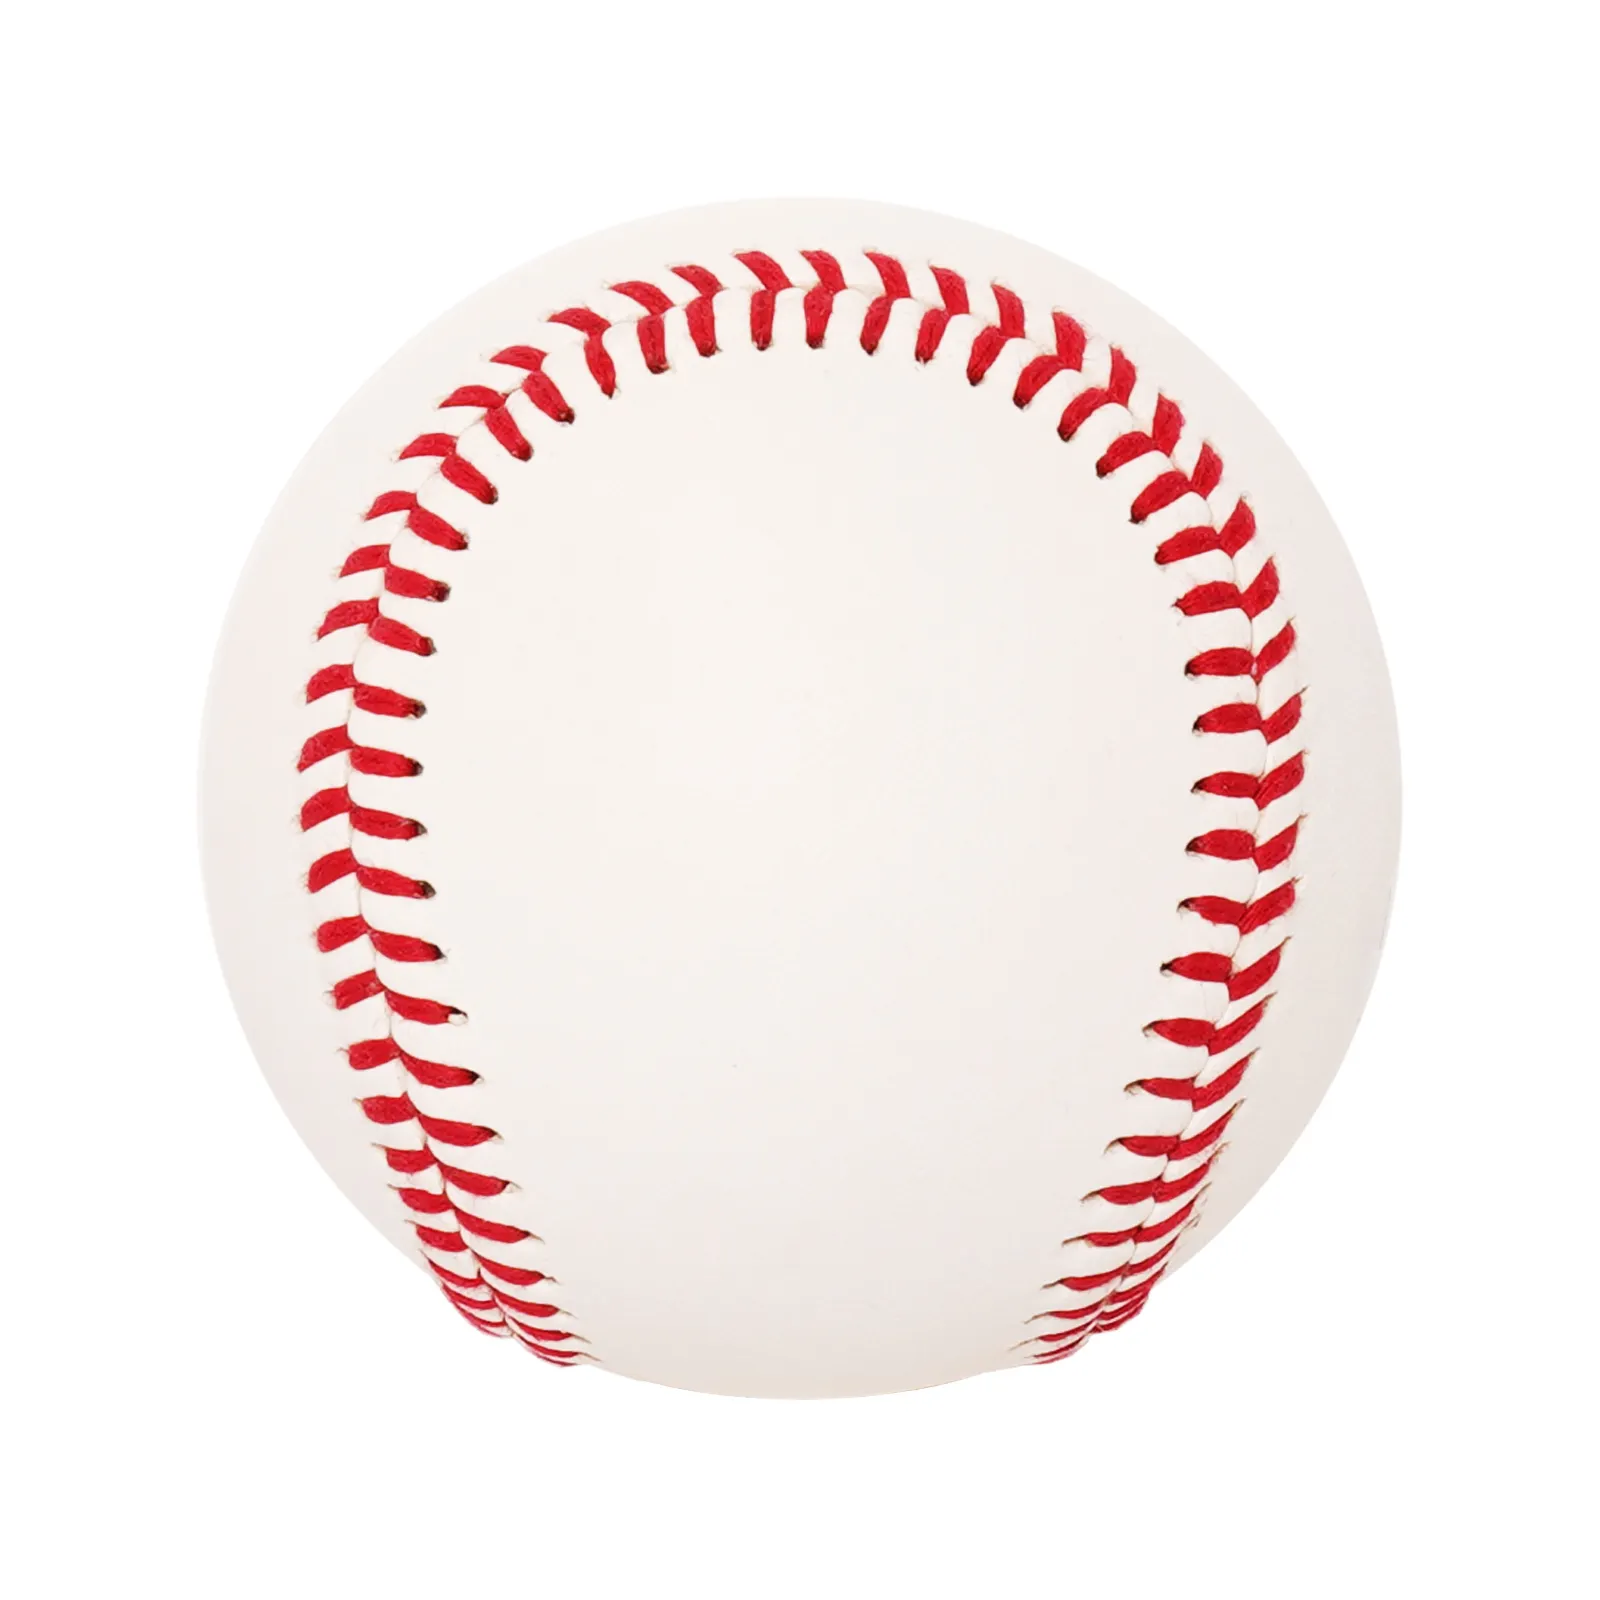 ขายส่ง9 "ที่มีคุณภาพสูงเบสบอลมืออาชีพเกมทนทาน Cowhide หนังวัวเบสบอลไม้ก๊อกขนสัตว์และยางแกนเบสบอล